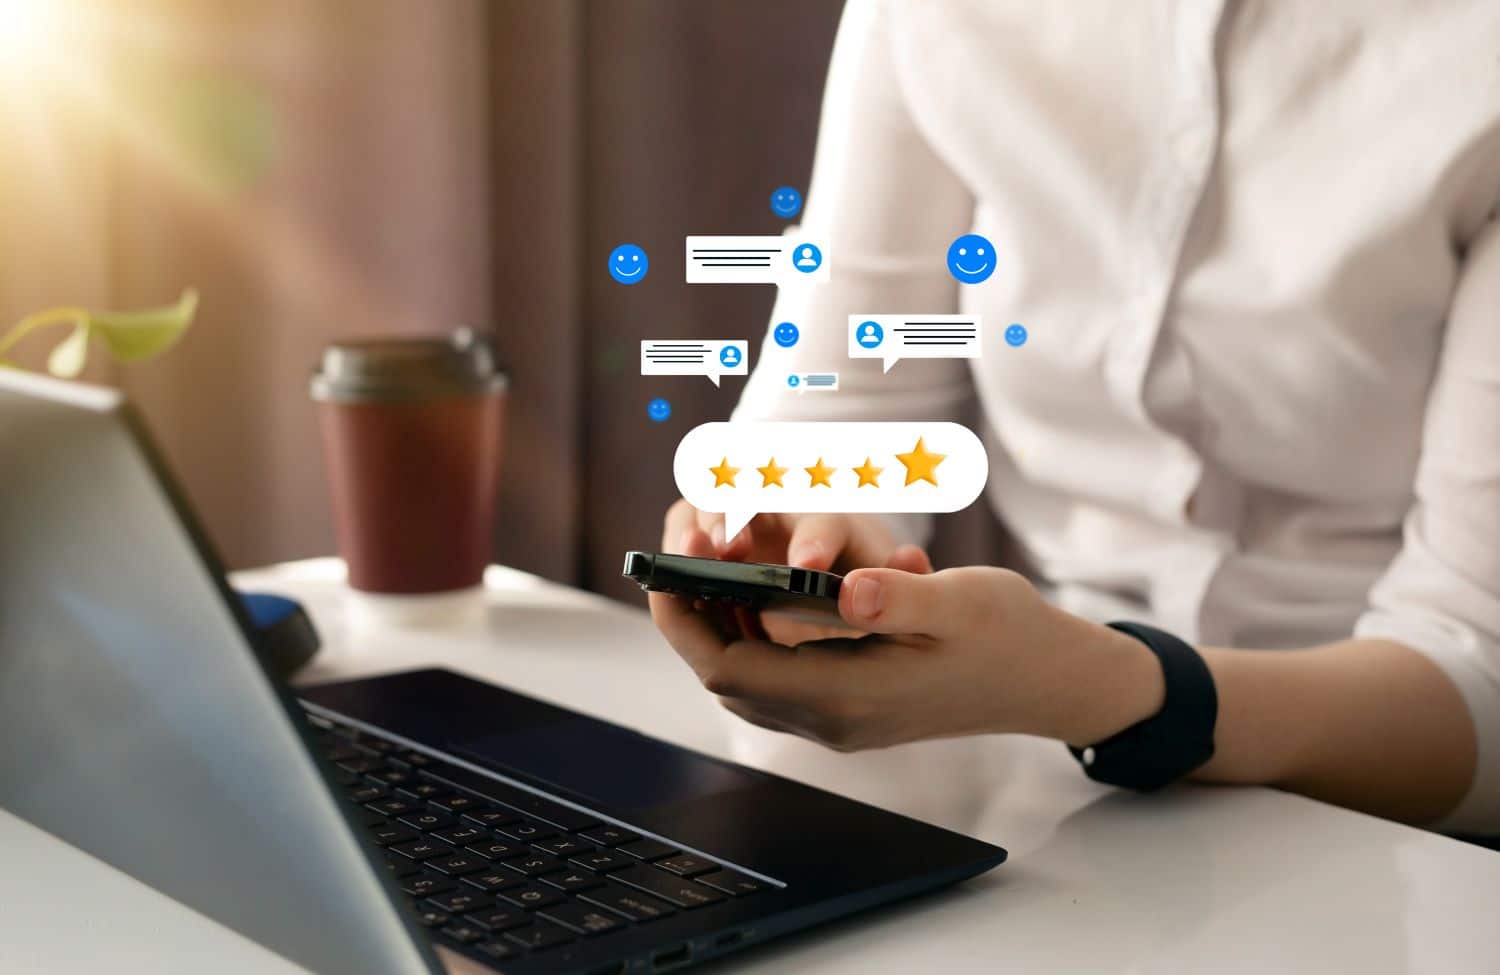 Utilisateur laissant un avis cinq étoiles sur mobile, soulignant l'importance des feedbacks authentiques dans le commerce en ligne